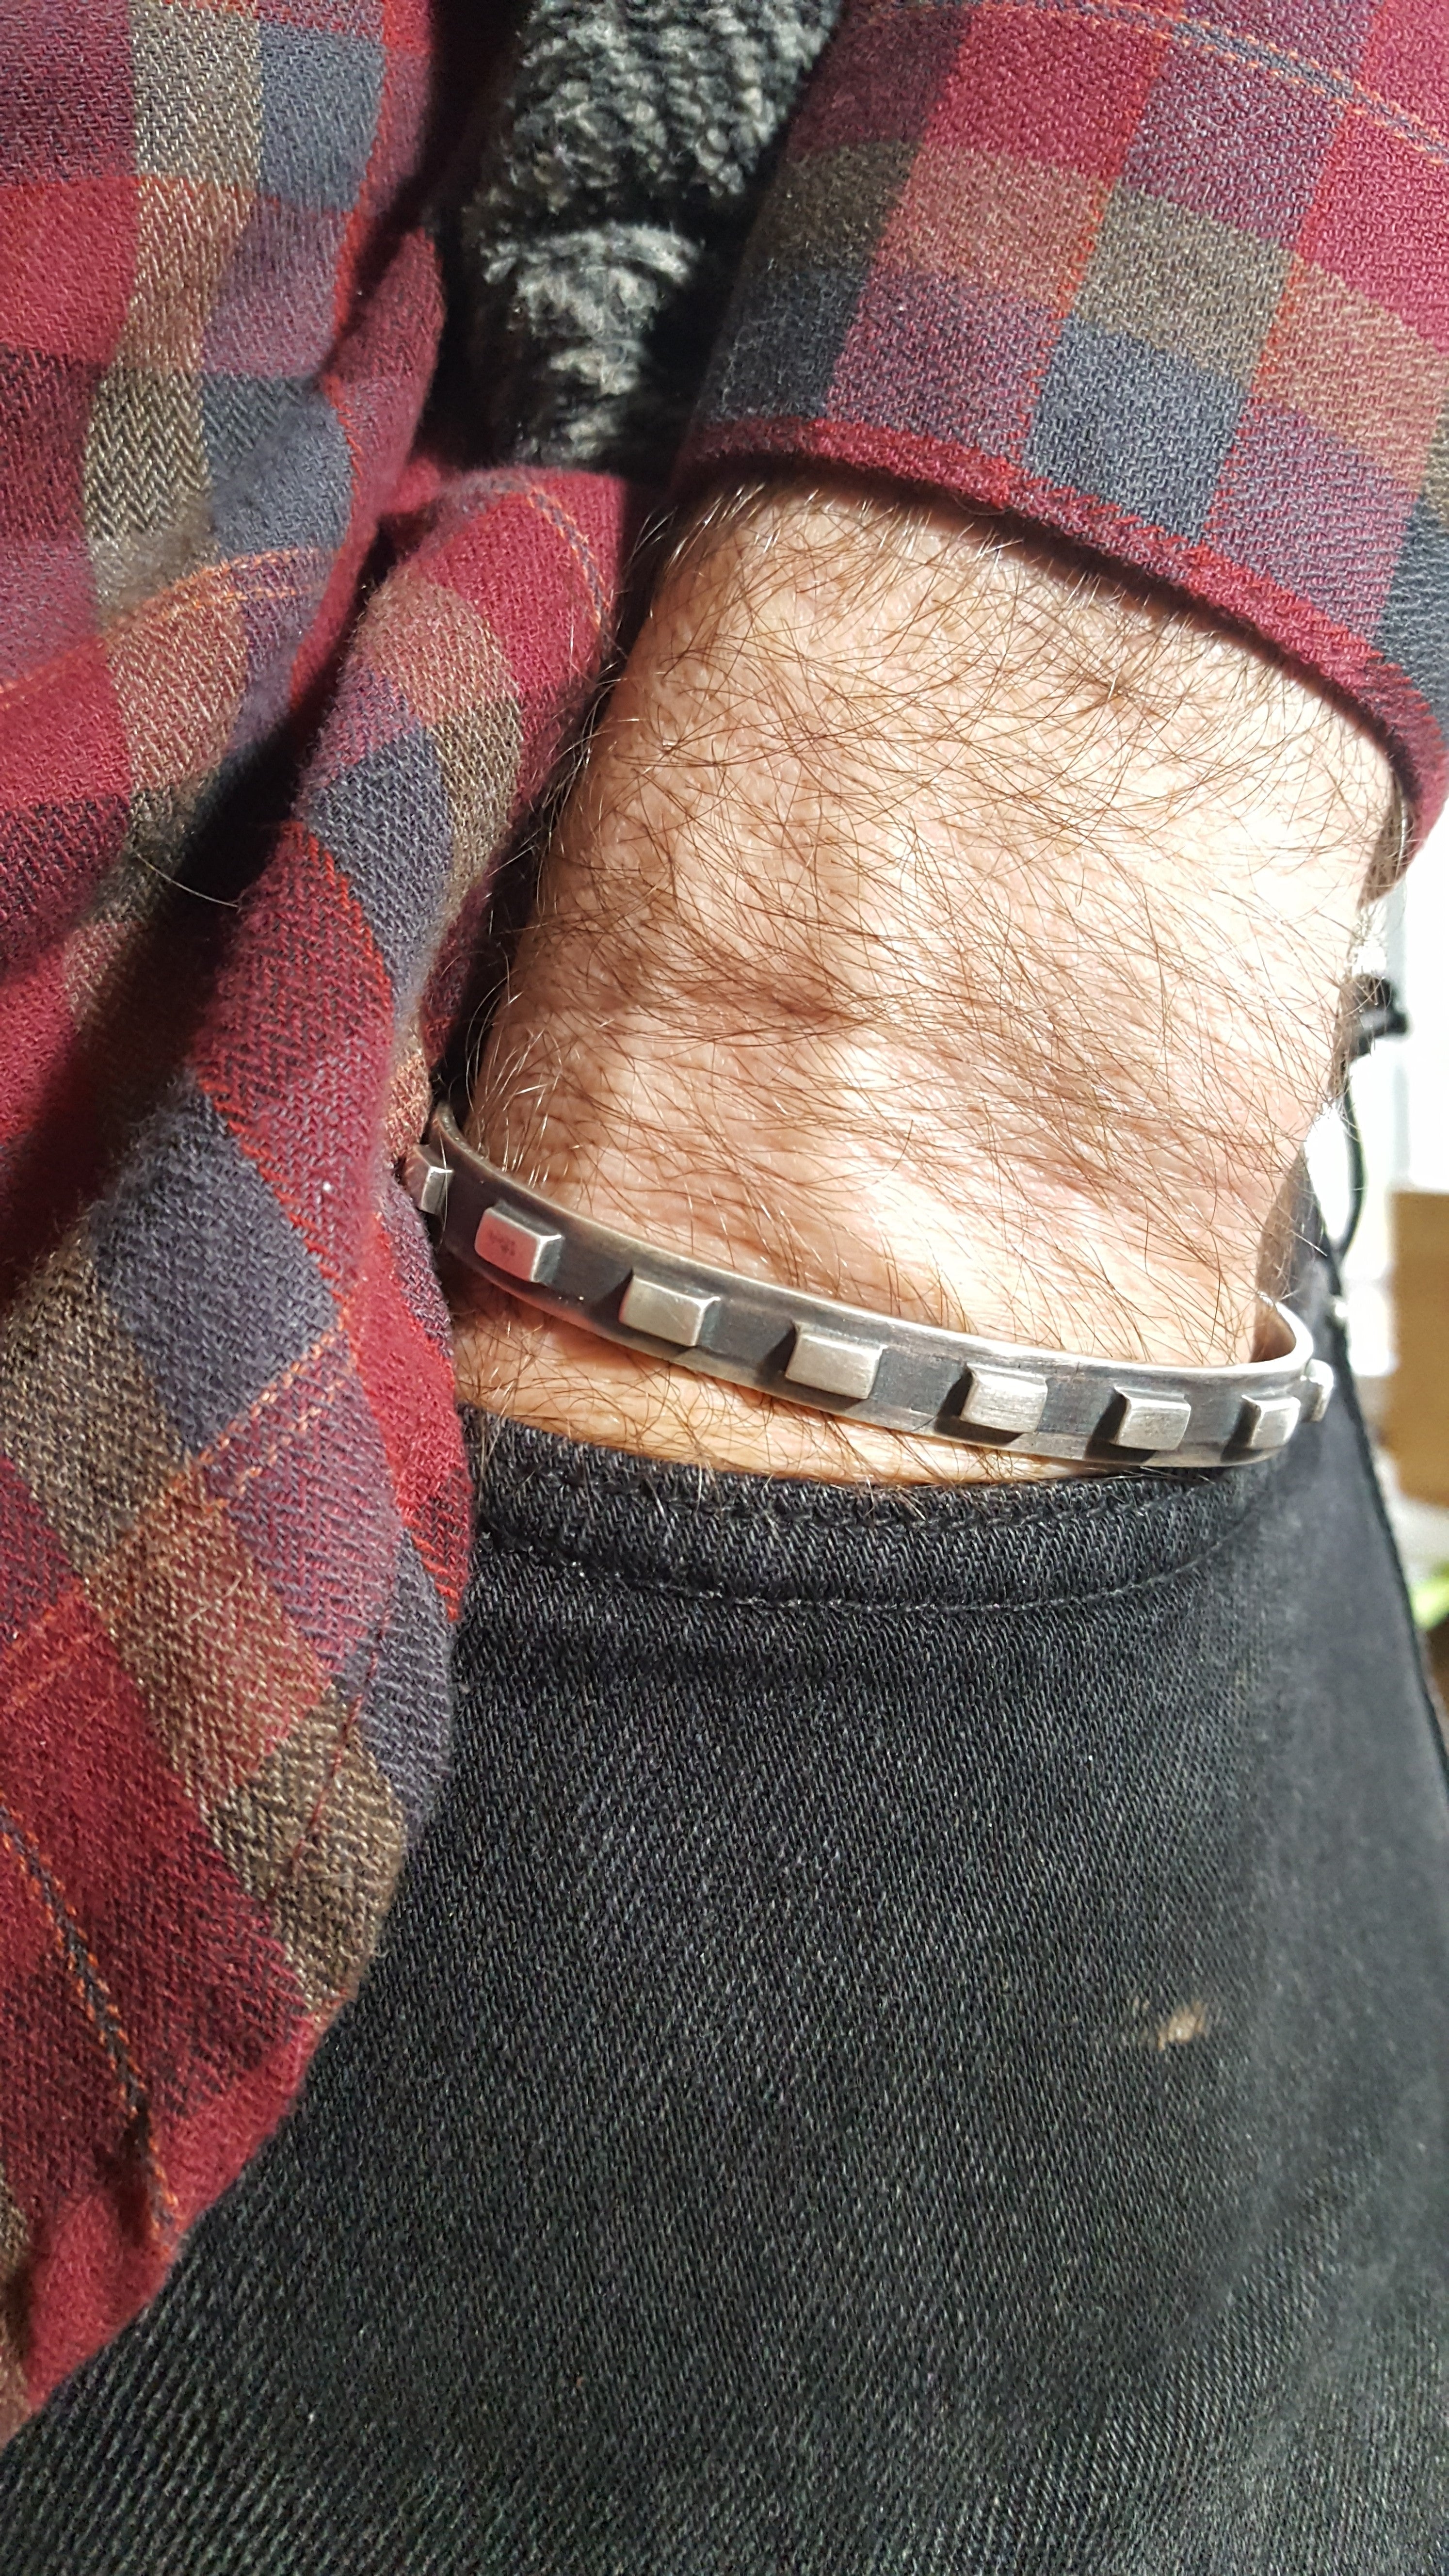 Sterling Gear Cuff Bracelet, Oxidized